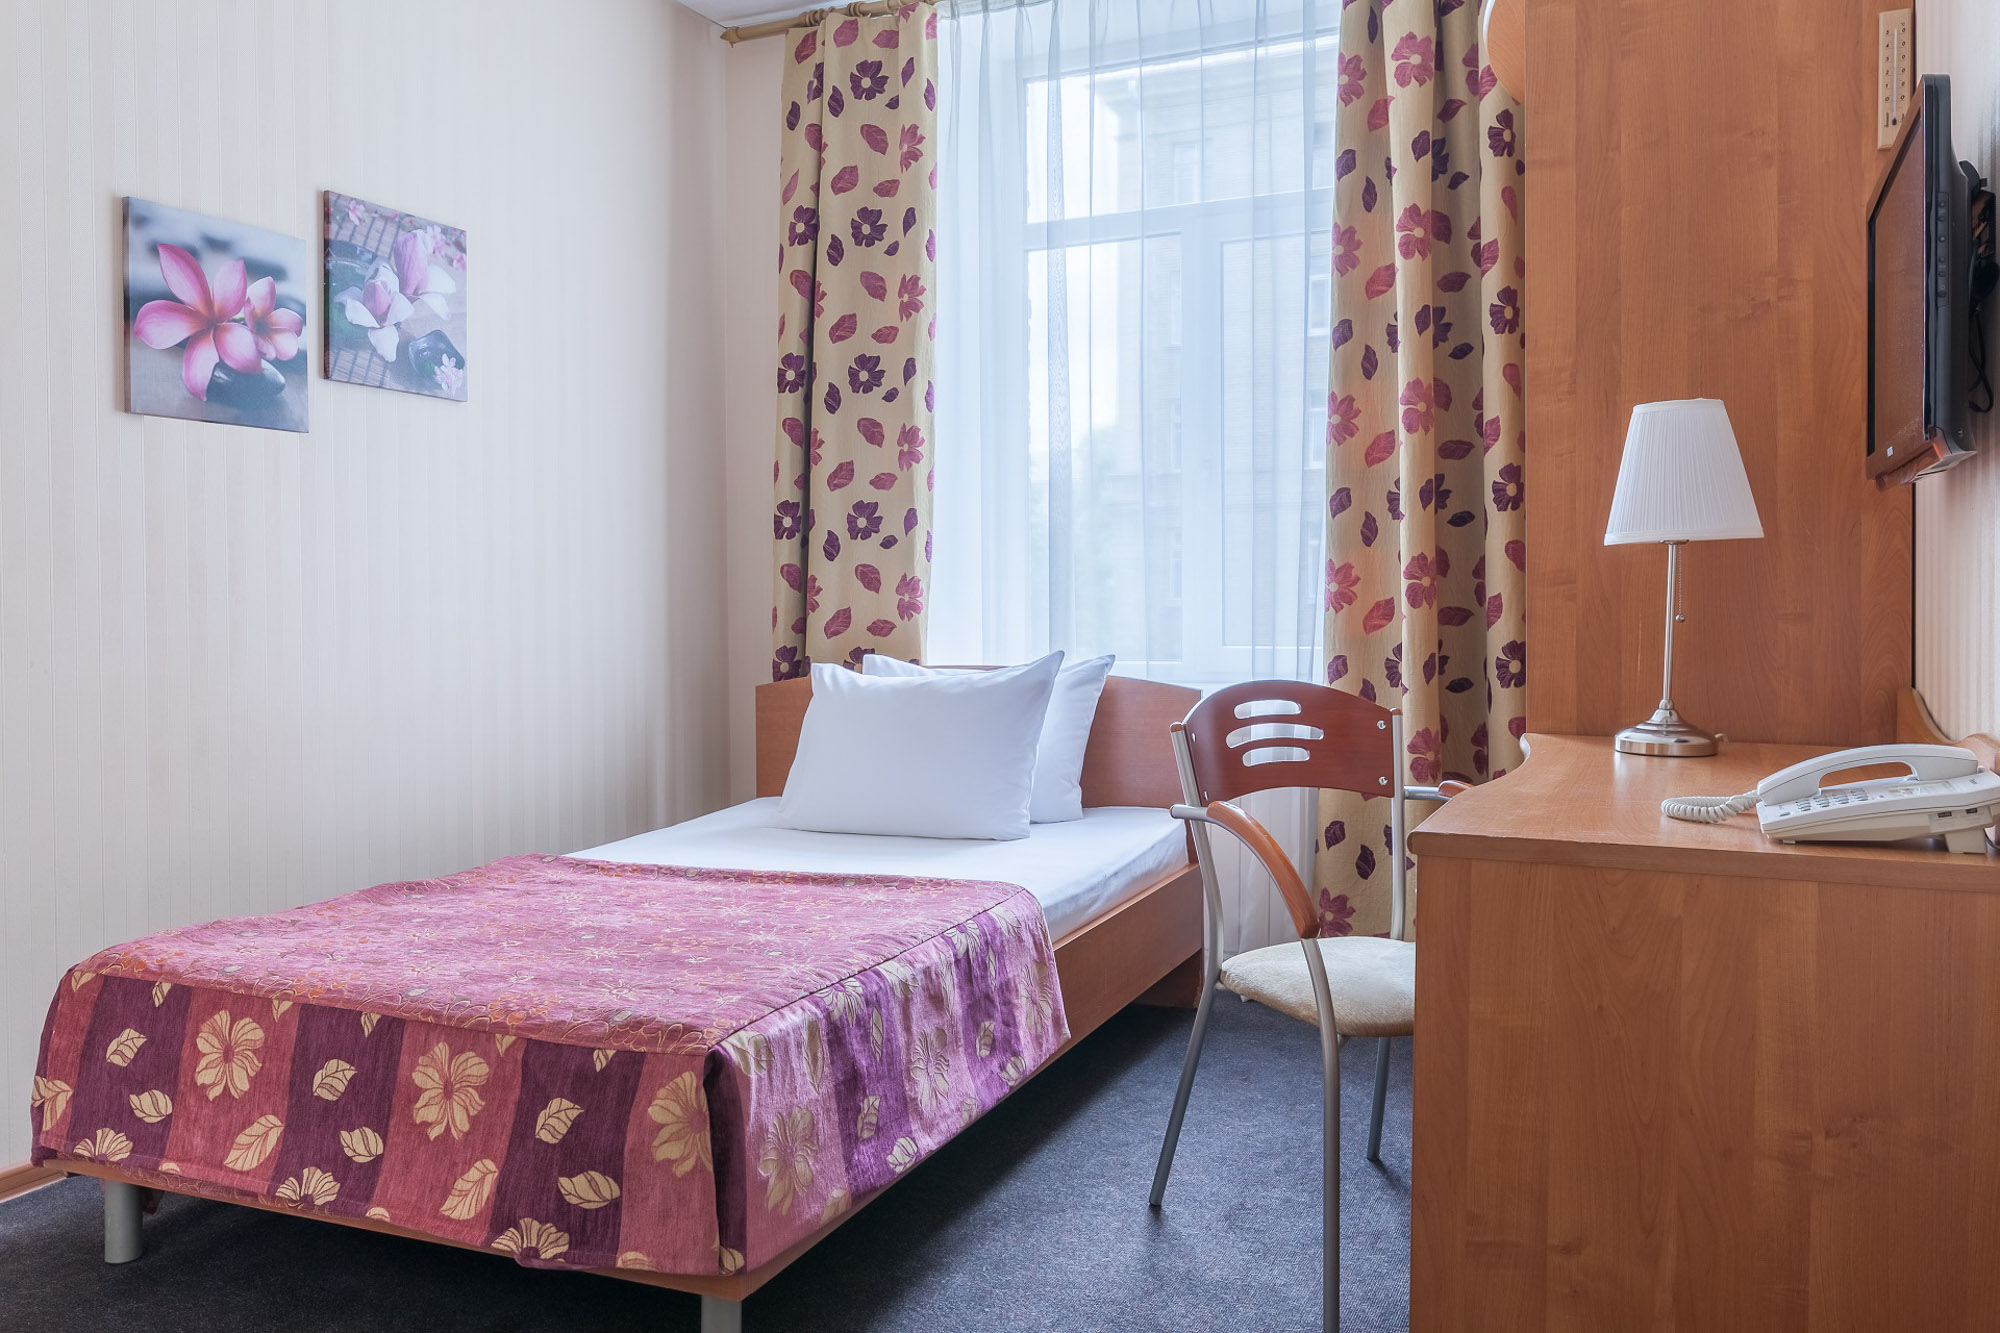 Отель турист санкт петербург отзывы